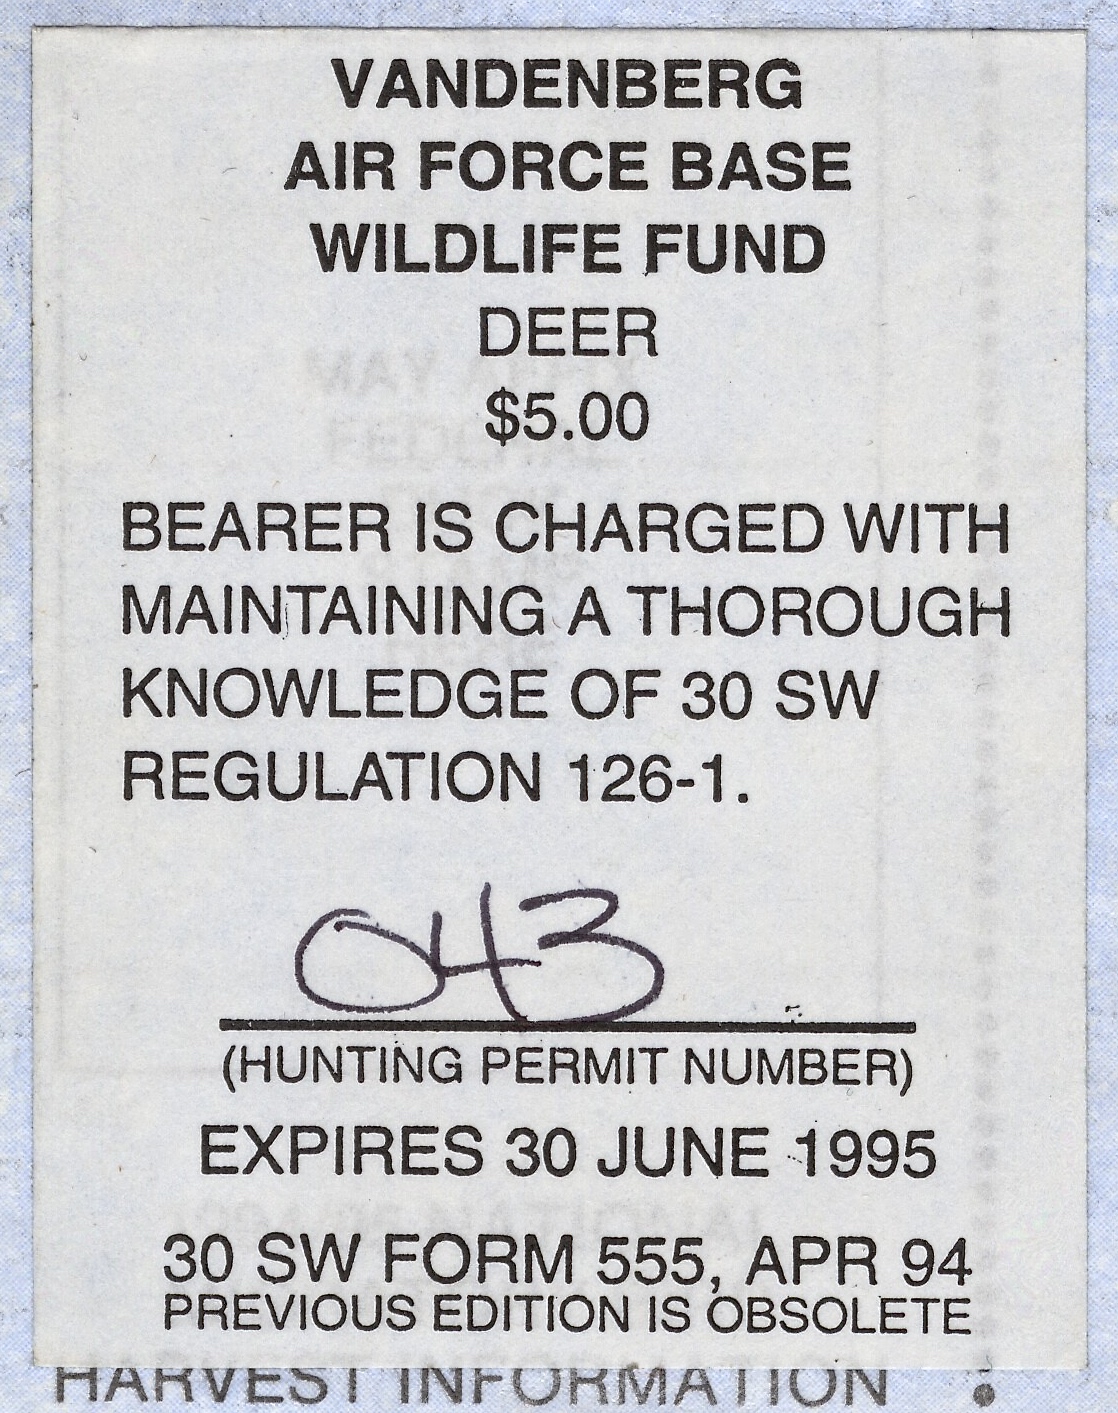 1994-95 VAFB Deer